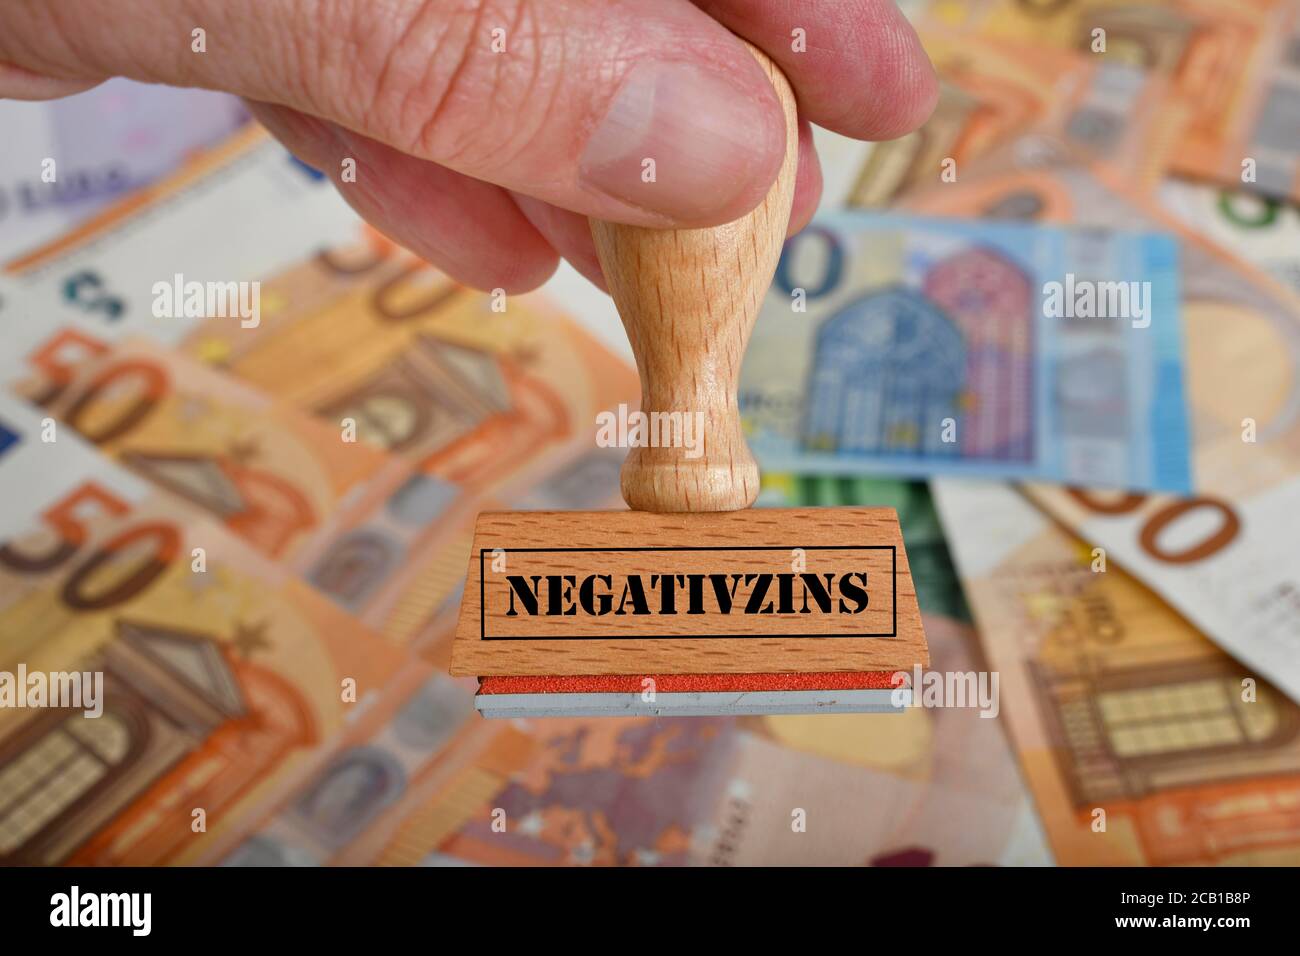 PHOTOMONTAGE, image symbole intérêt négatif, timbre avec inscription INTÉRÊT NÉGATIF, sur les billets EN EUROS, Allemagne Banque D'Images